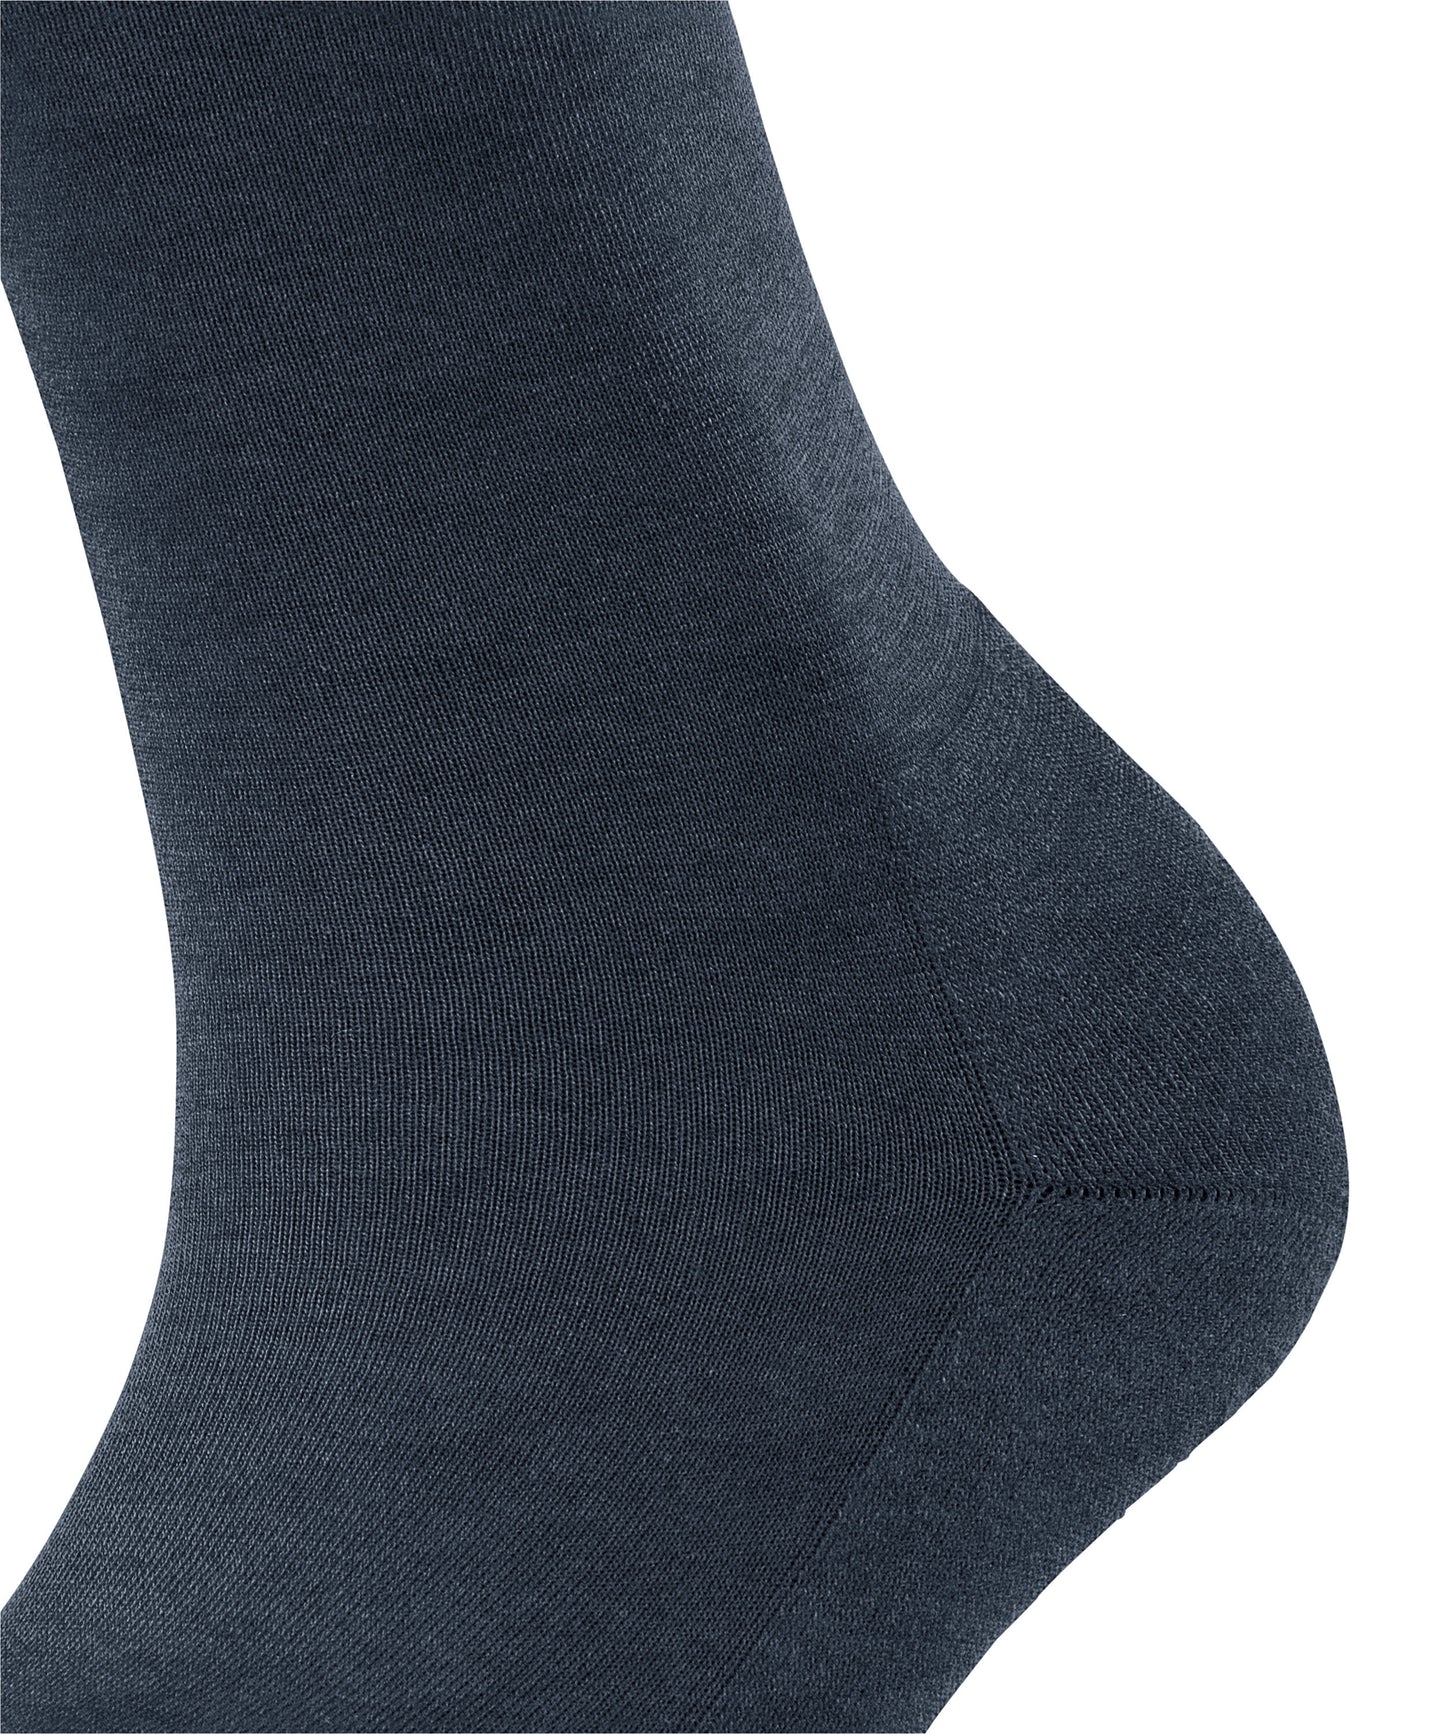 Socken ClimaWool (Navy Mel.)